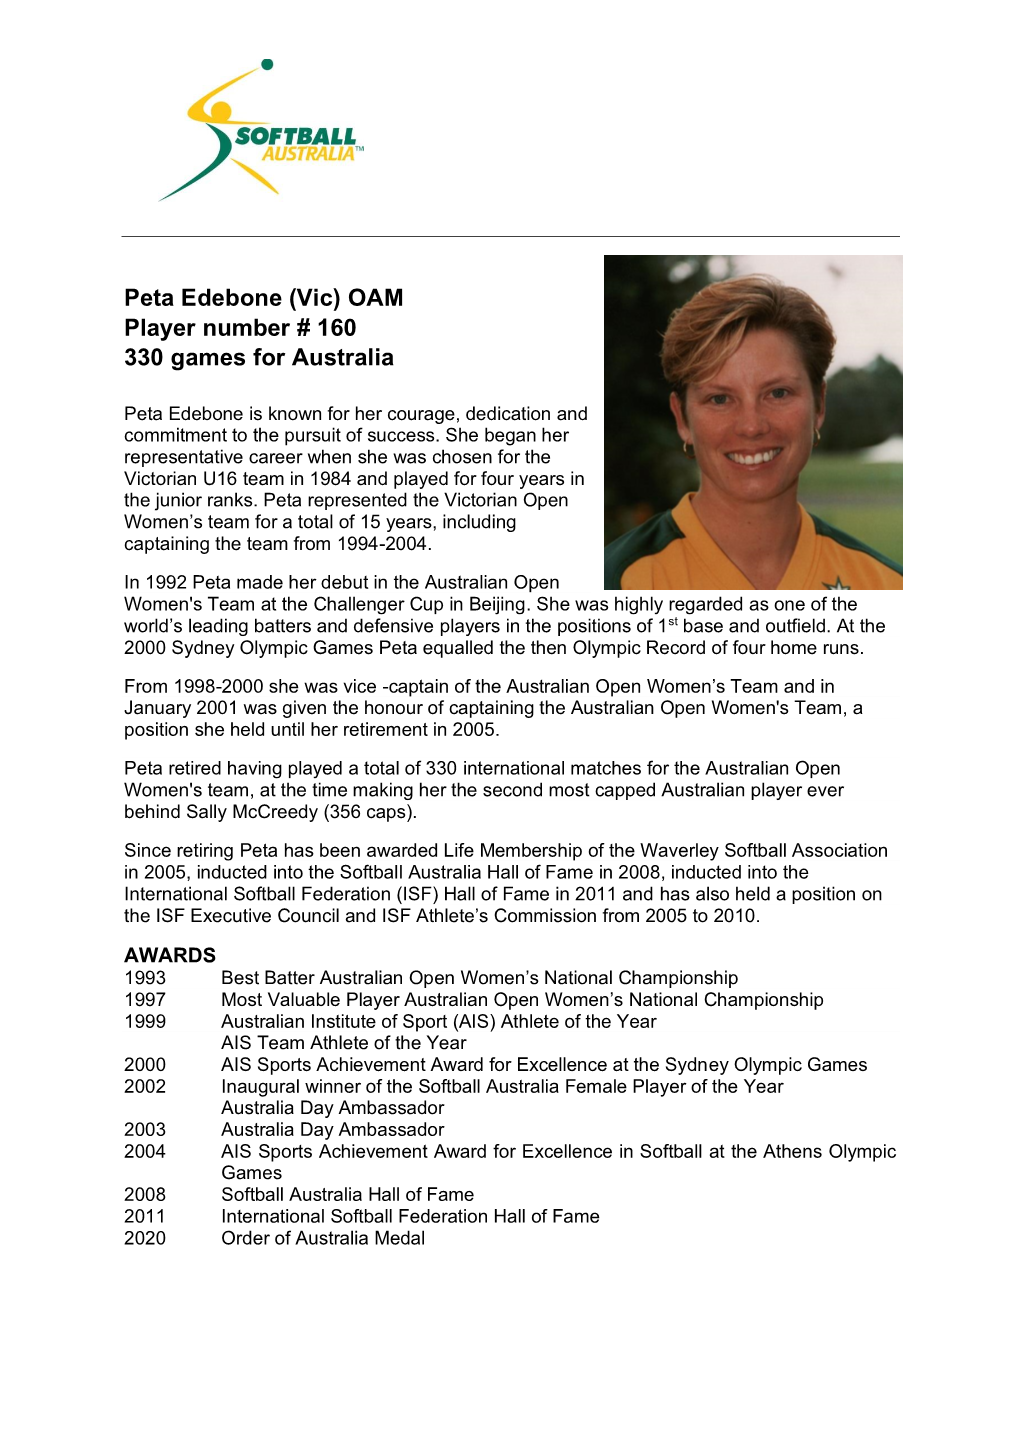 Peta Edebone (Vic) OAM Player Number # 160 330 Games for Australia